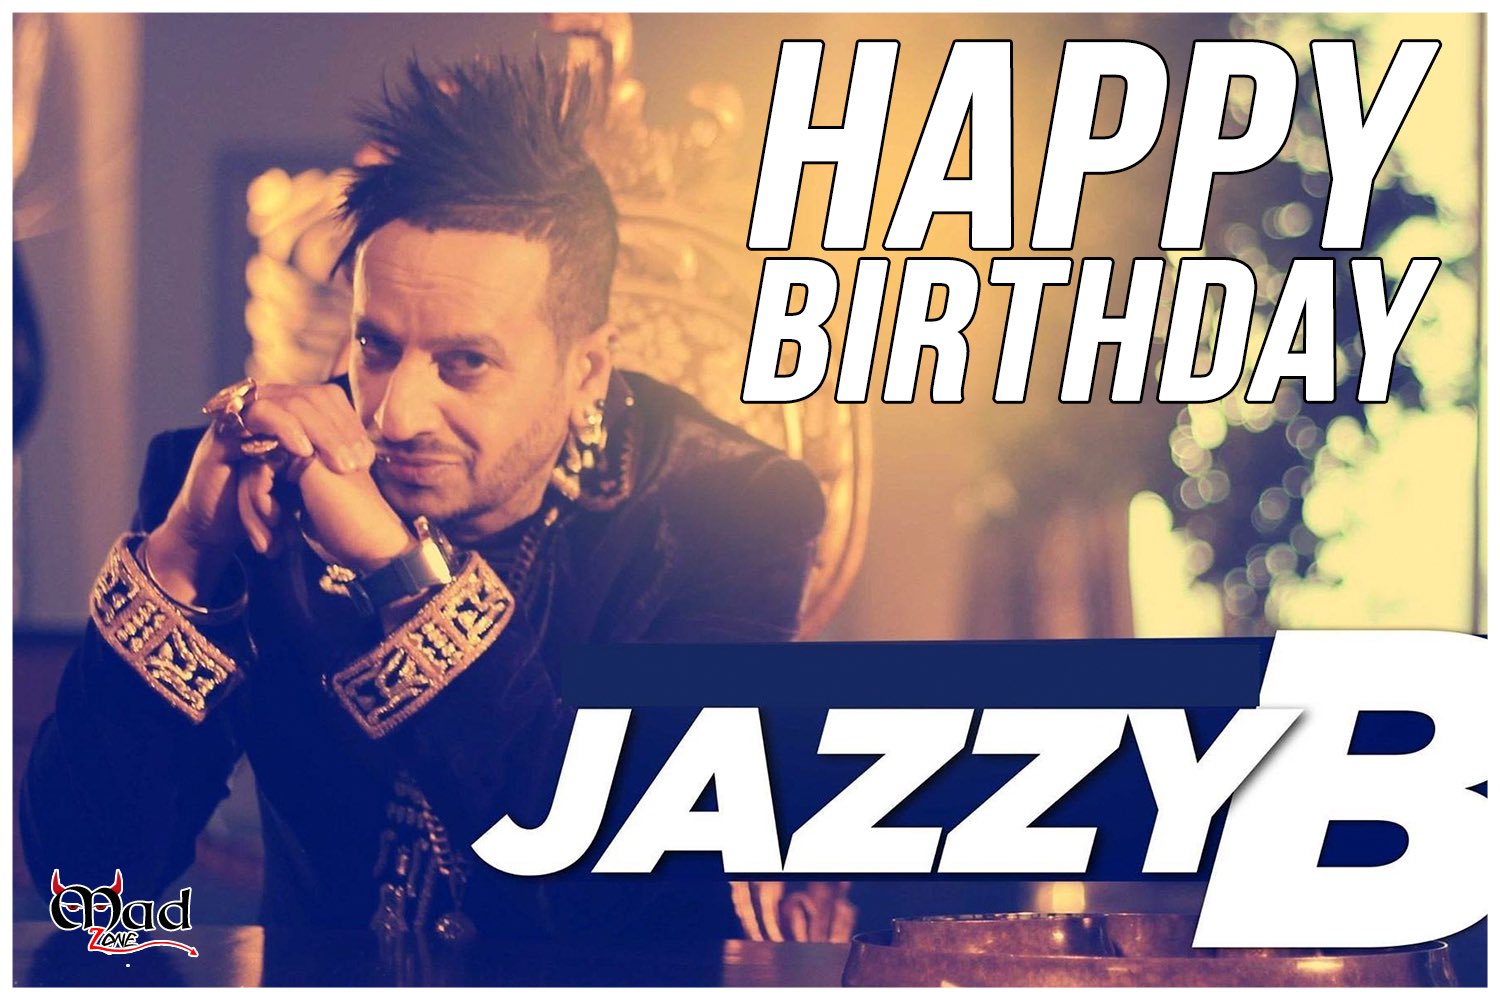 Happy Birthday to Jazzy B 
We all love u   